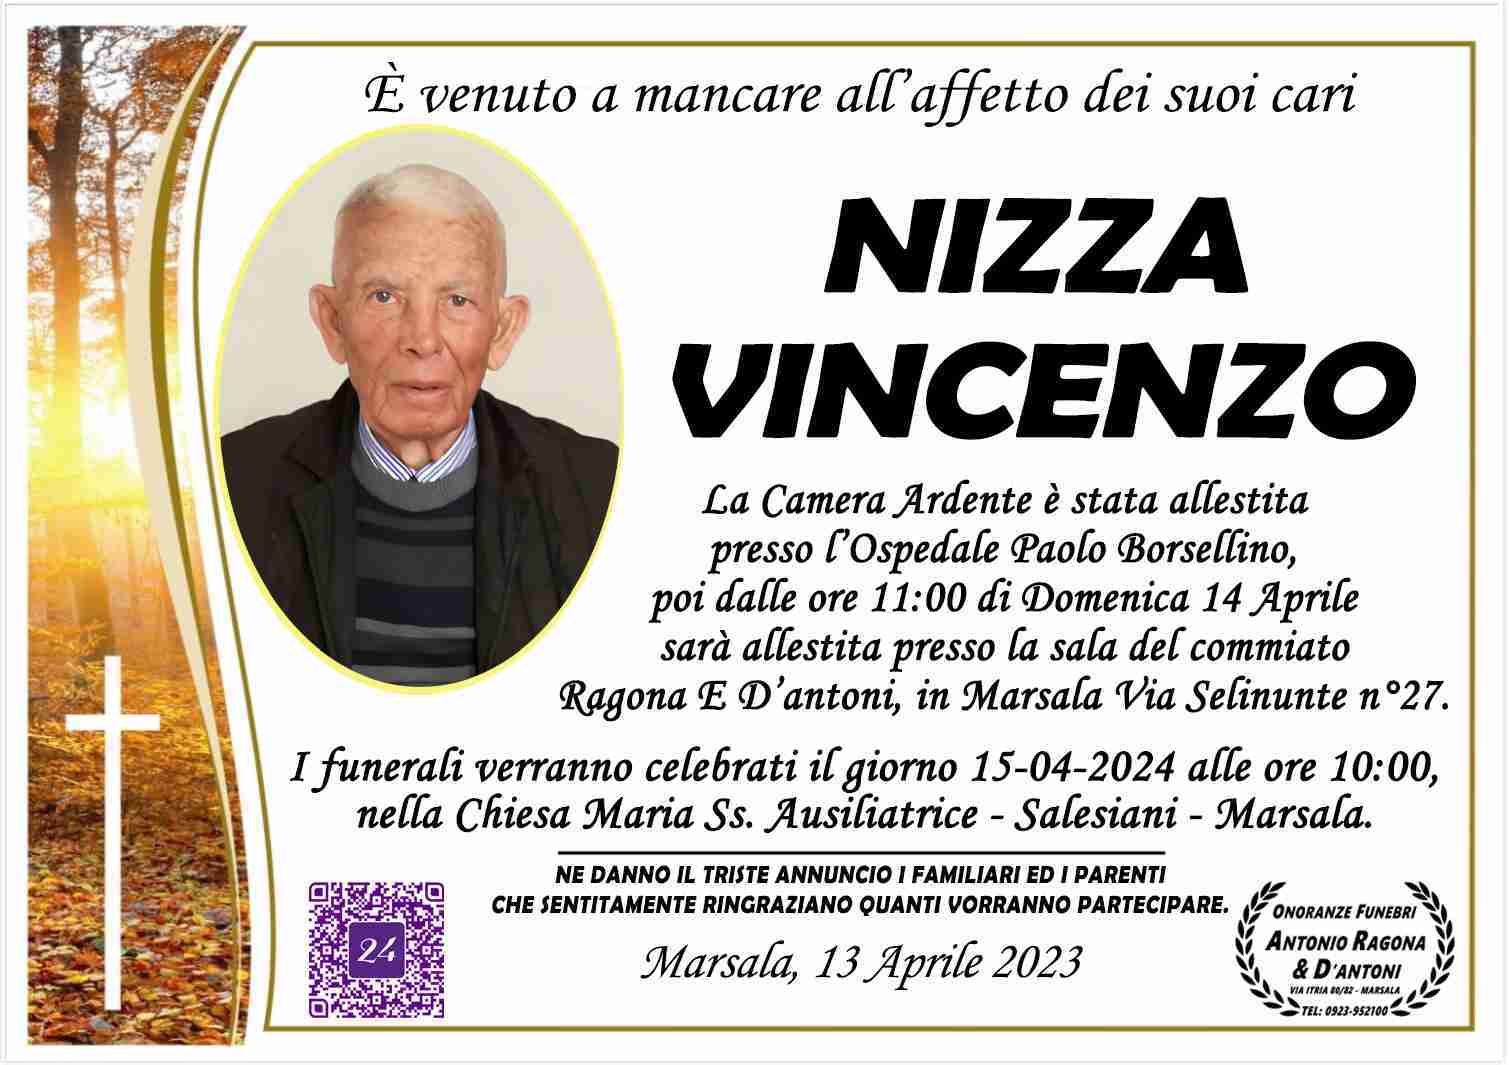 Vincenzo Nizza